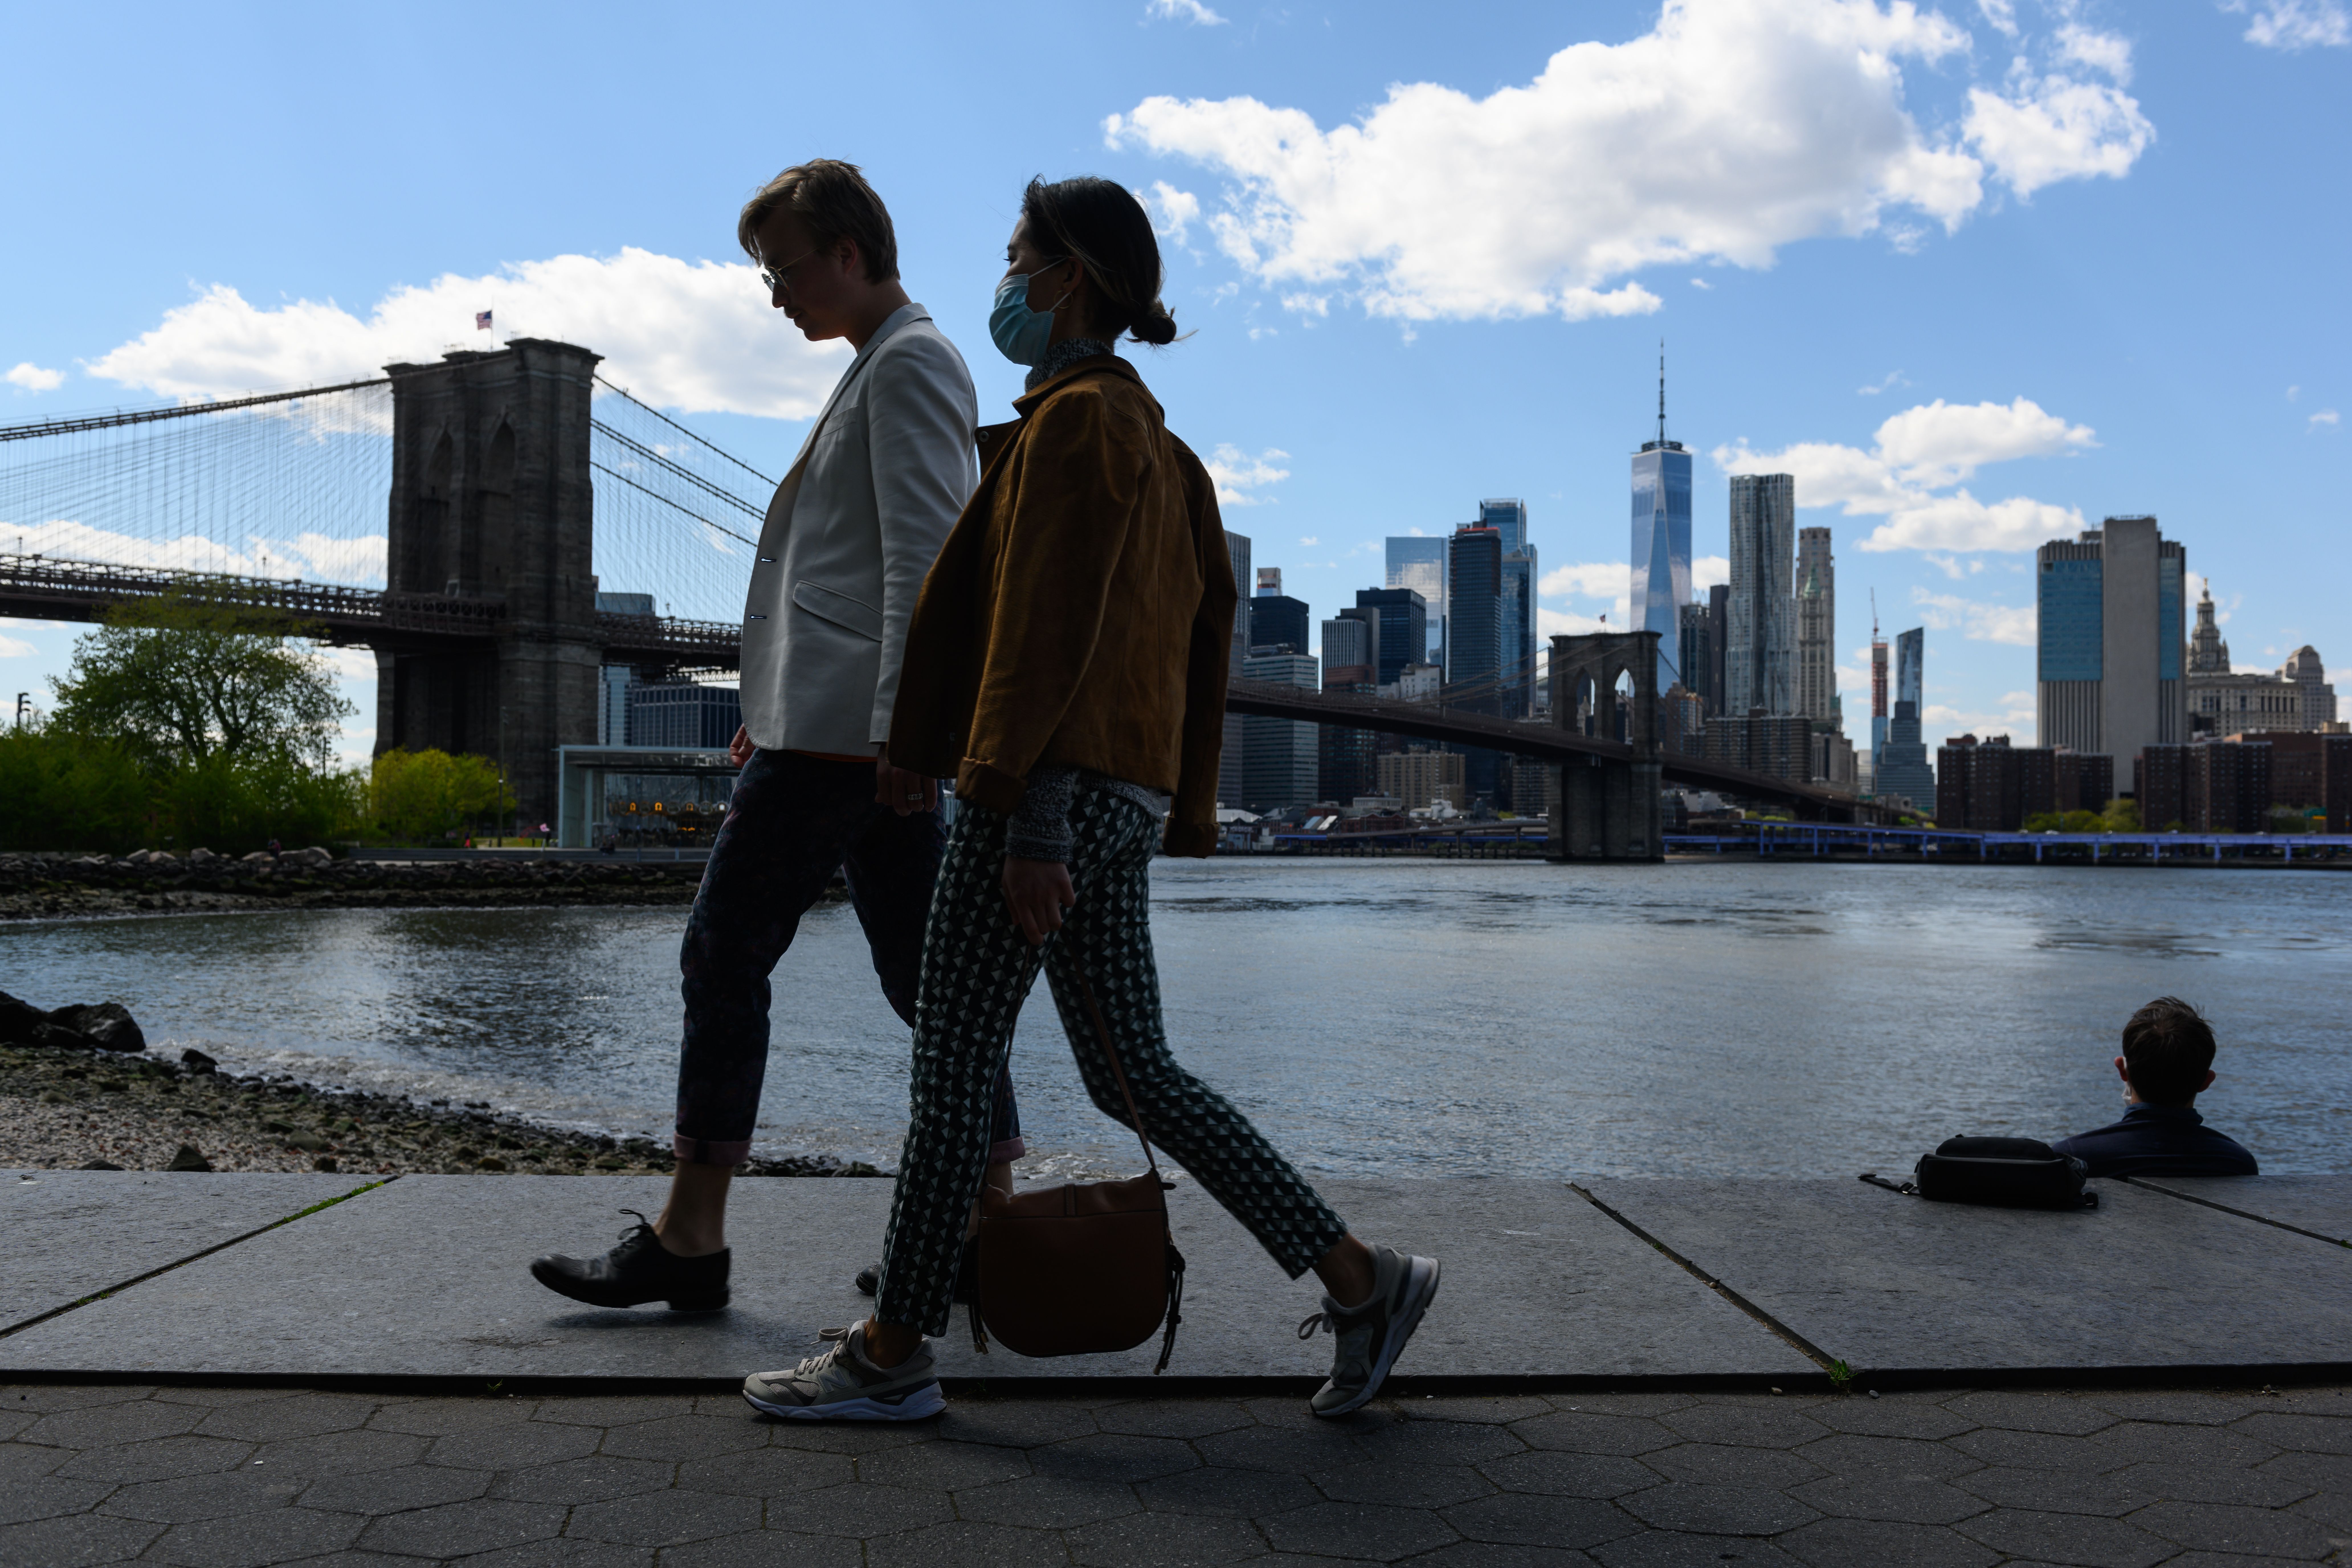 Penambahan Awal: Turis berbondong-bondong ke Brooklyn, tetapi tidak terlalu banyak di Manhattan